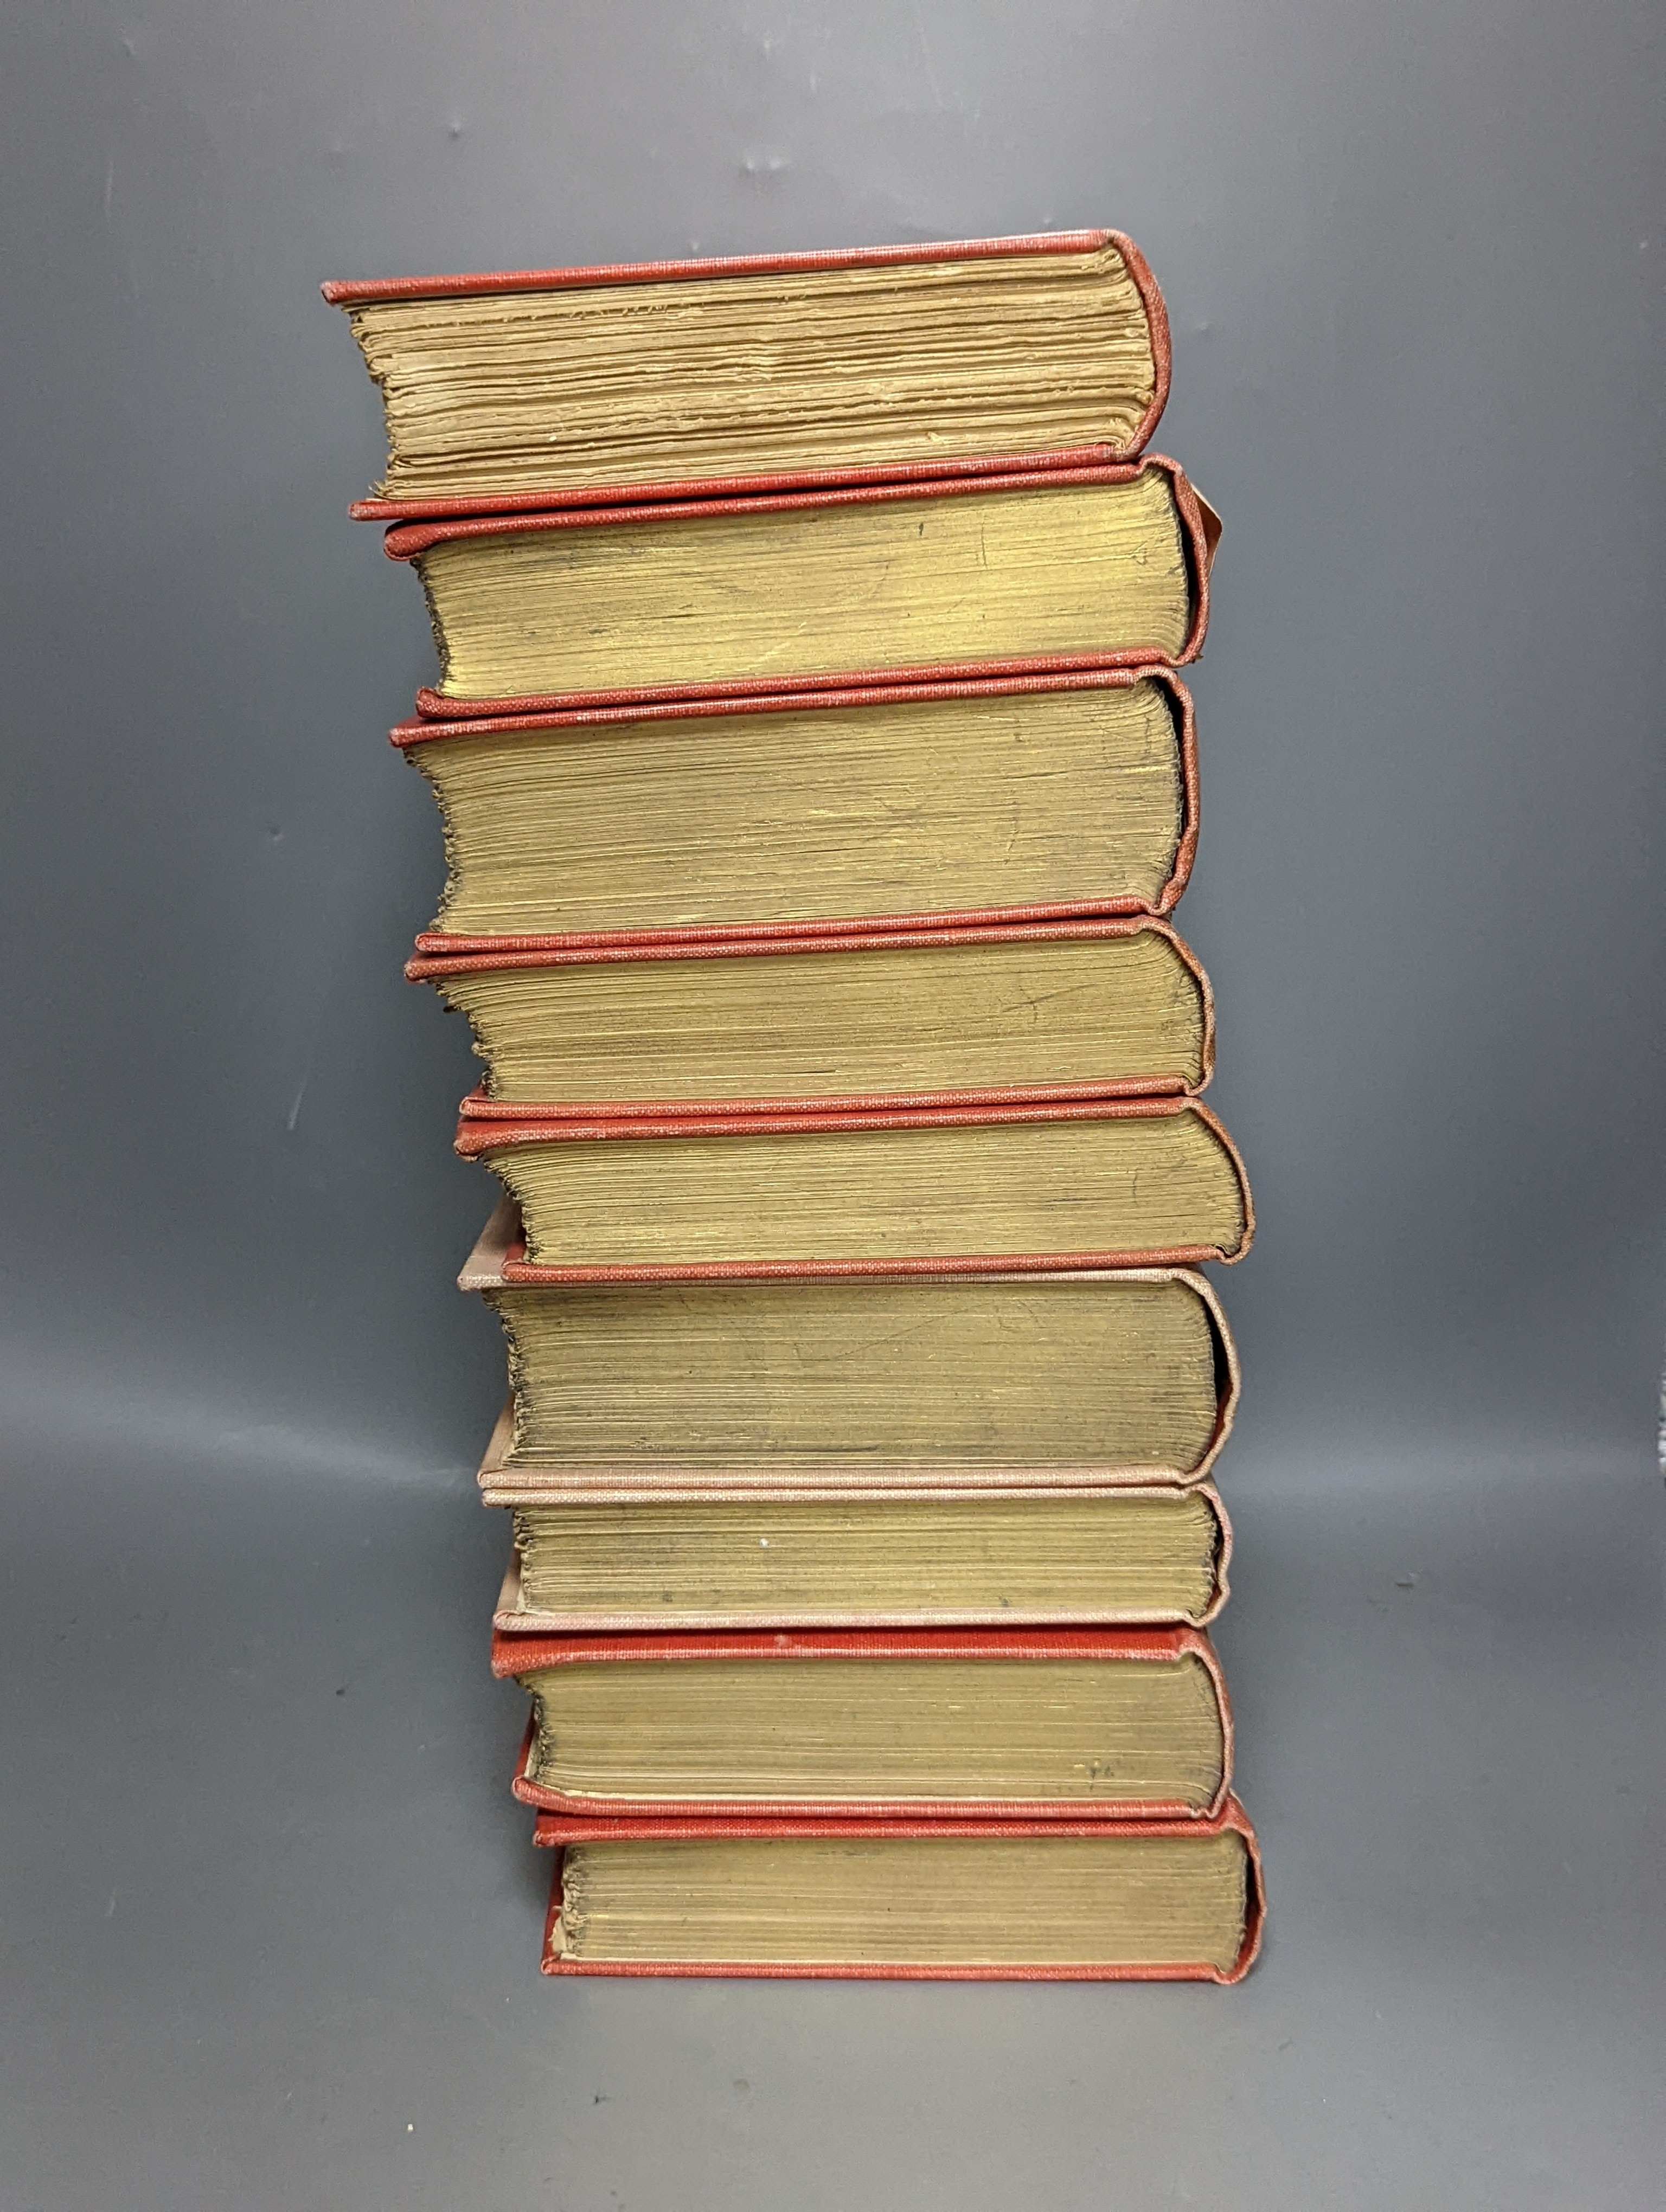 The Novels of R.S. Surtees, 9 vols.